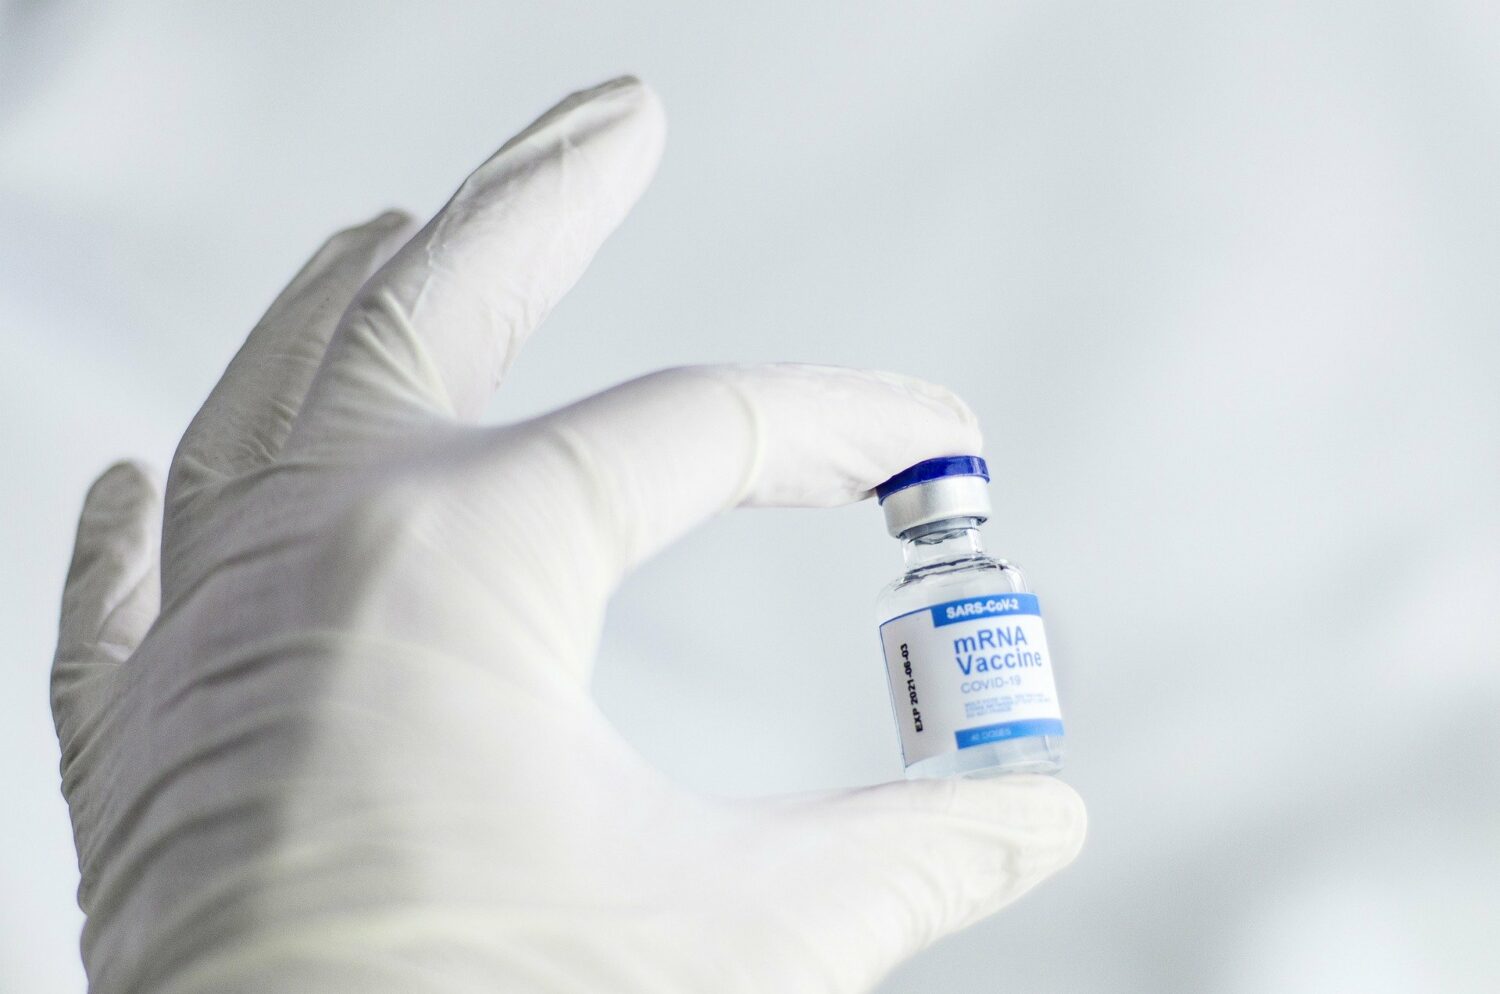 physIQ, CellCarta Collaborate on Study to Revolutionize Vaccine 